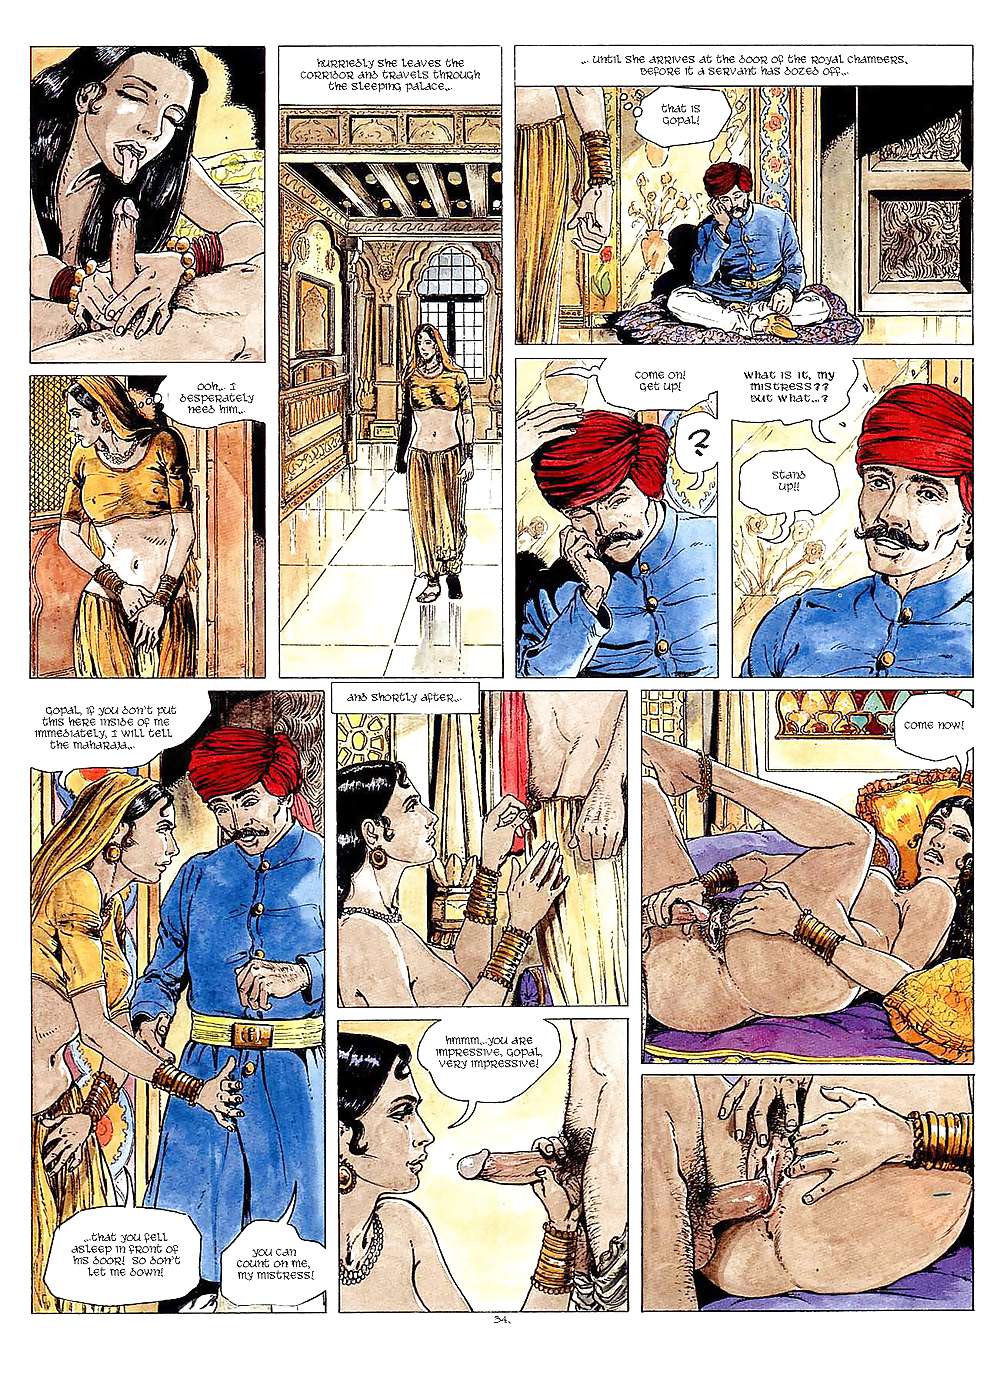 エロティック・コミック・アート40 - カーマ・スートラ
 #19691236